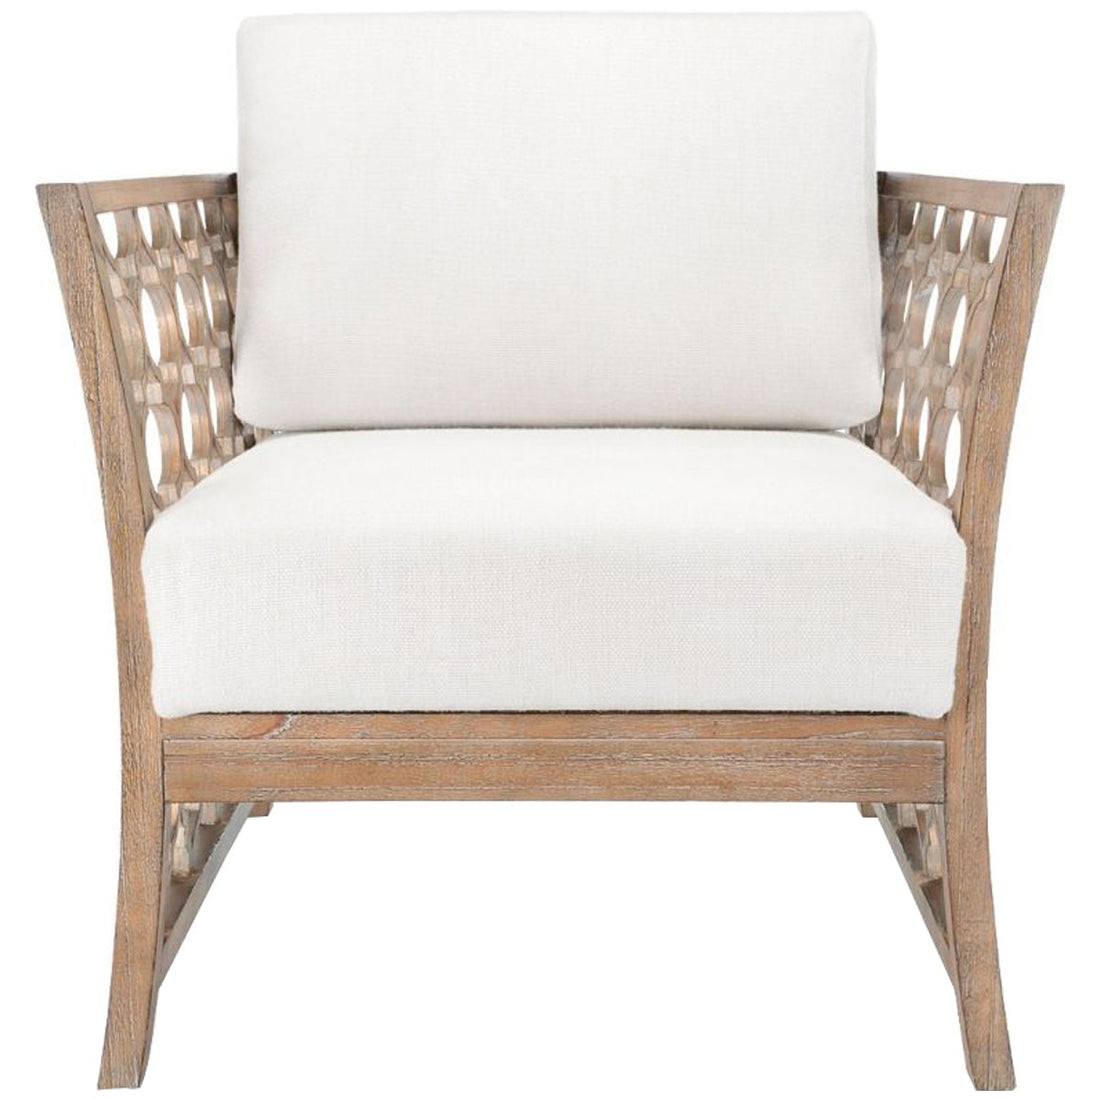 Villa & House Parkan Club Chair - Driftwood